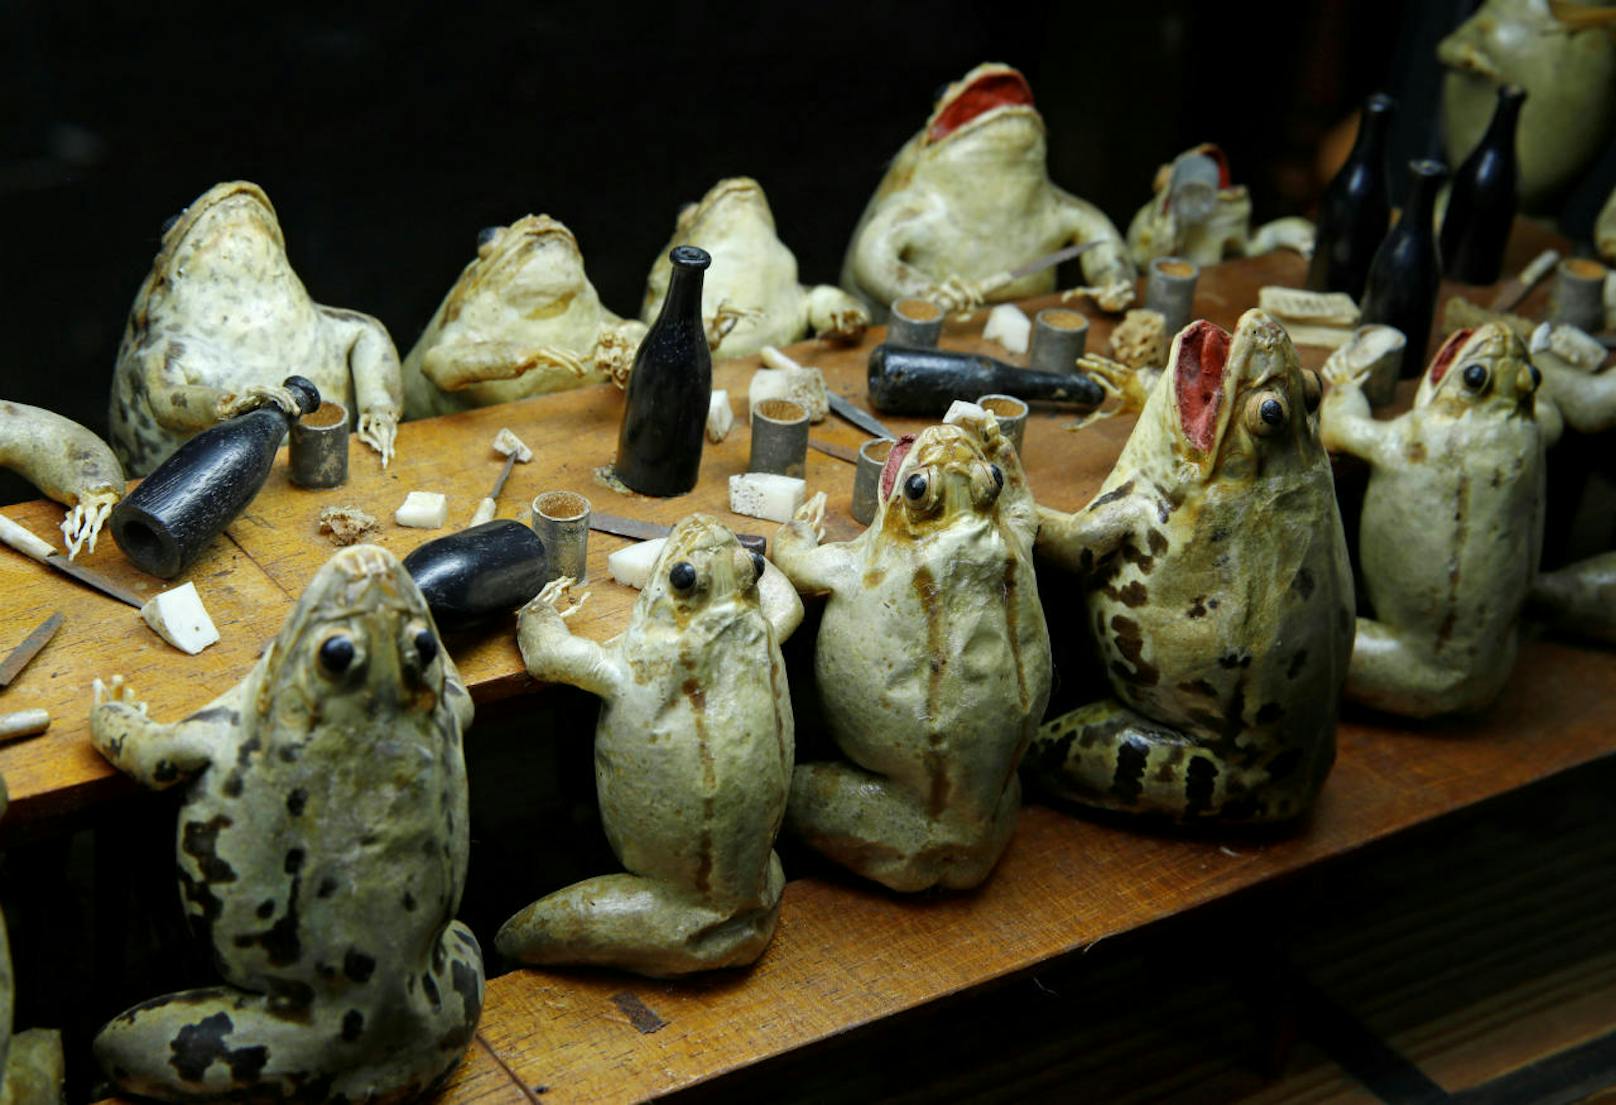 Frösche essen in einem Wahllokal. Im Froschmuseum in Estavayer-le-Lac in der Schweiz stellen 108 ausgestopfte Frösche Alltagsszenen aus dem 19. Jahrhundert dar.